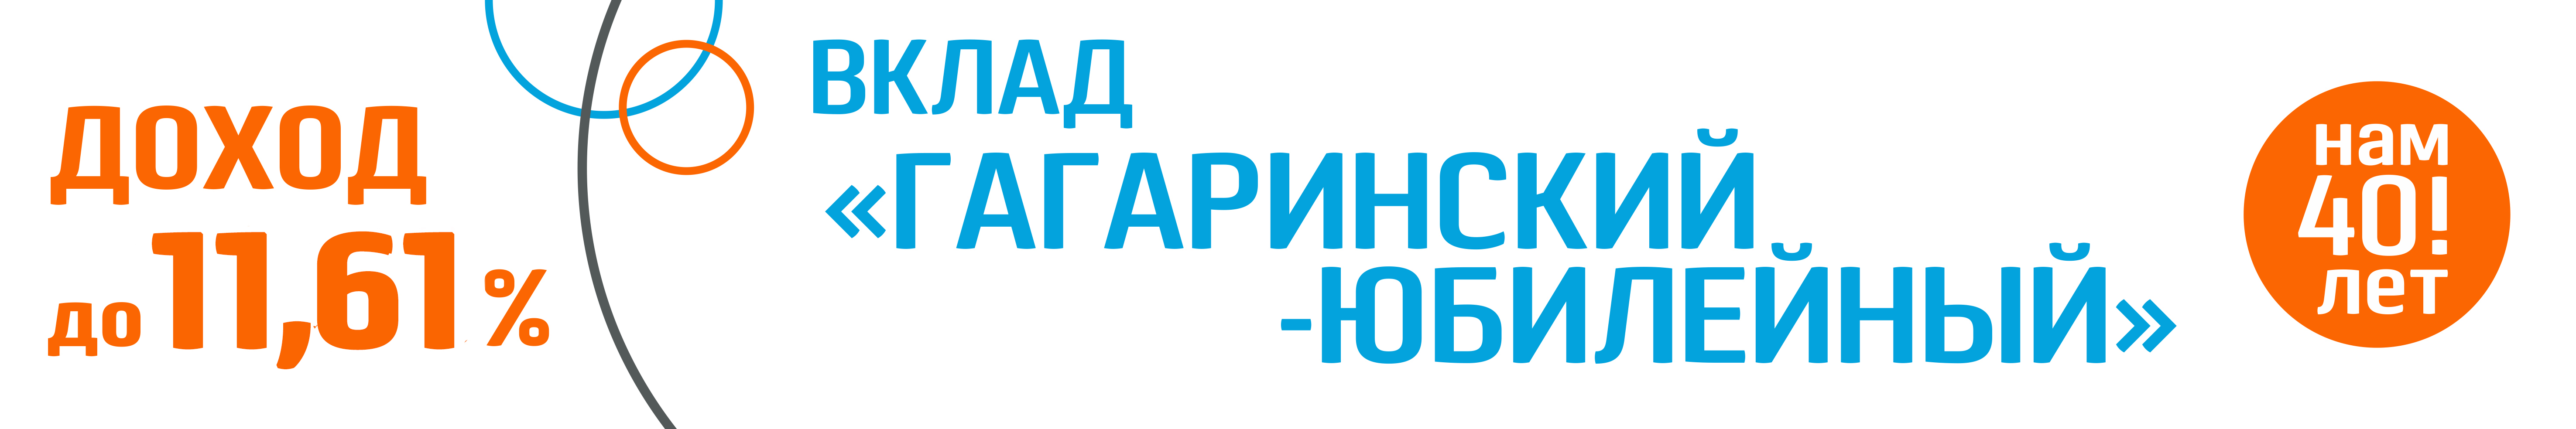 Банк Гагаринский снизил минимальную первоначальную сумму вкладов и увеличил их доходность до 11,61 %